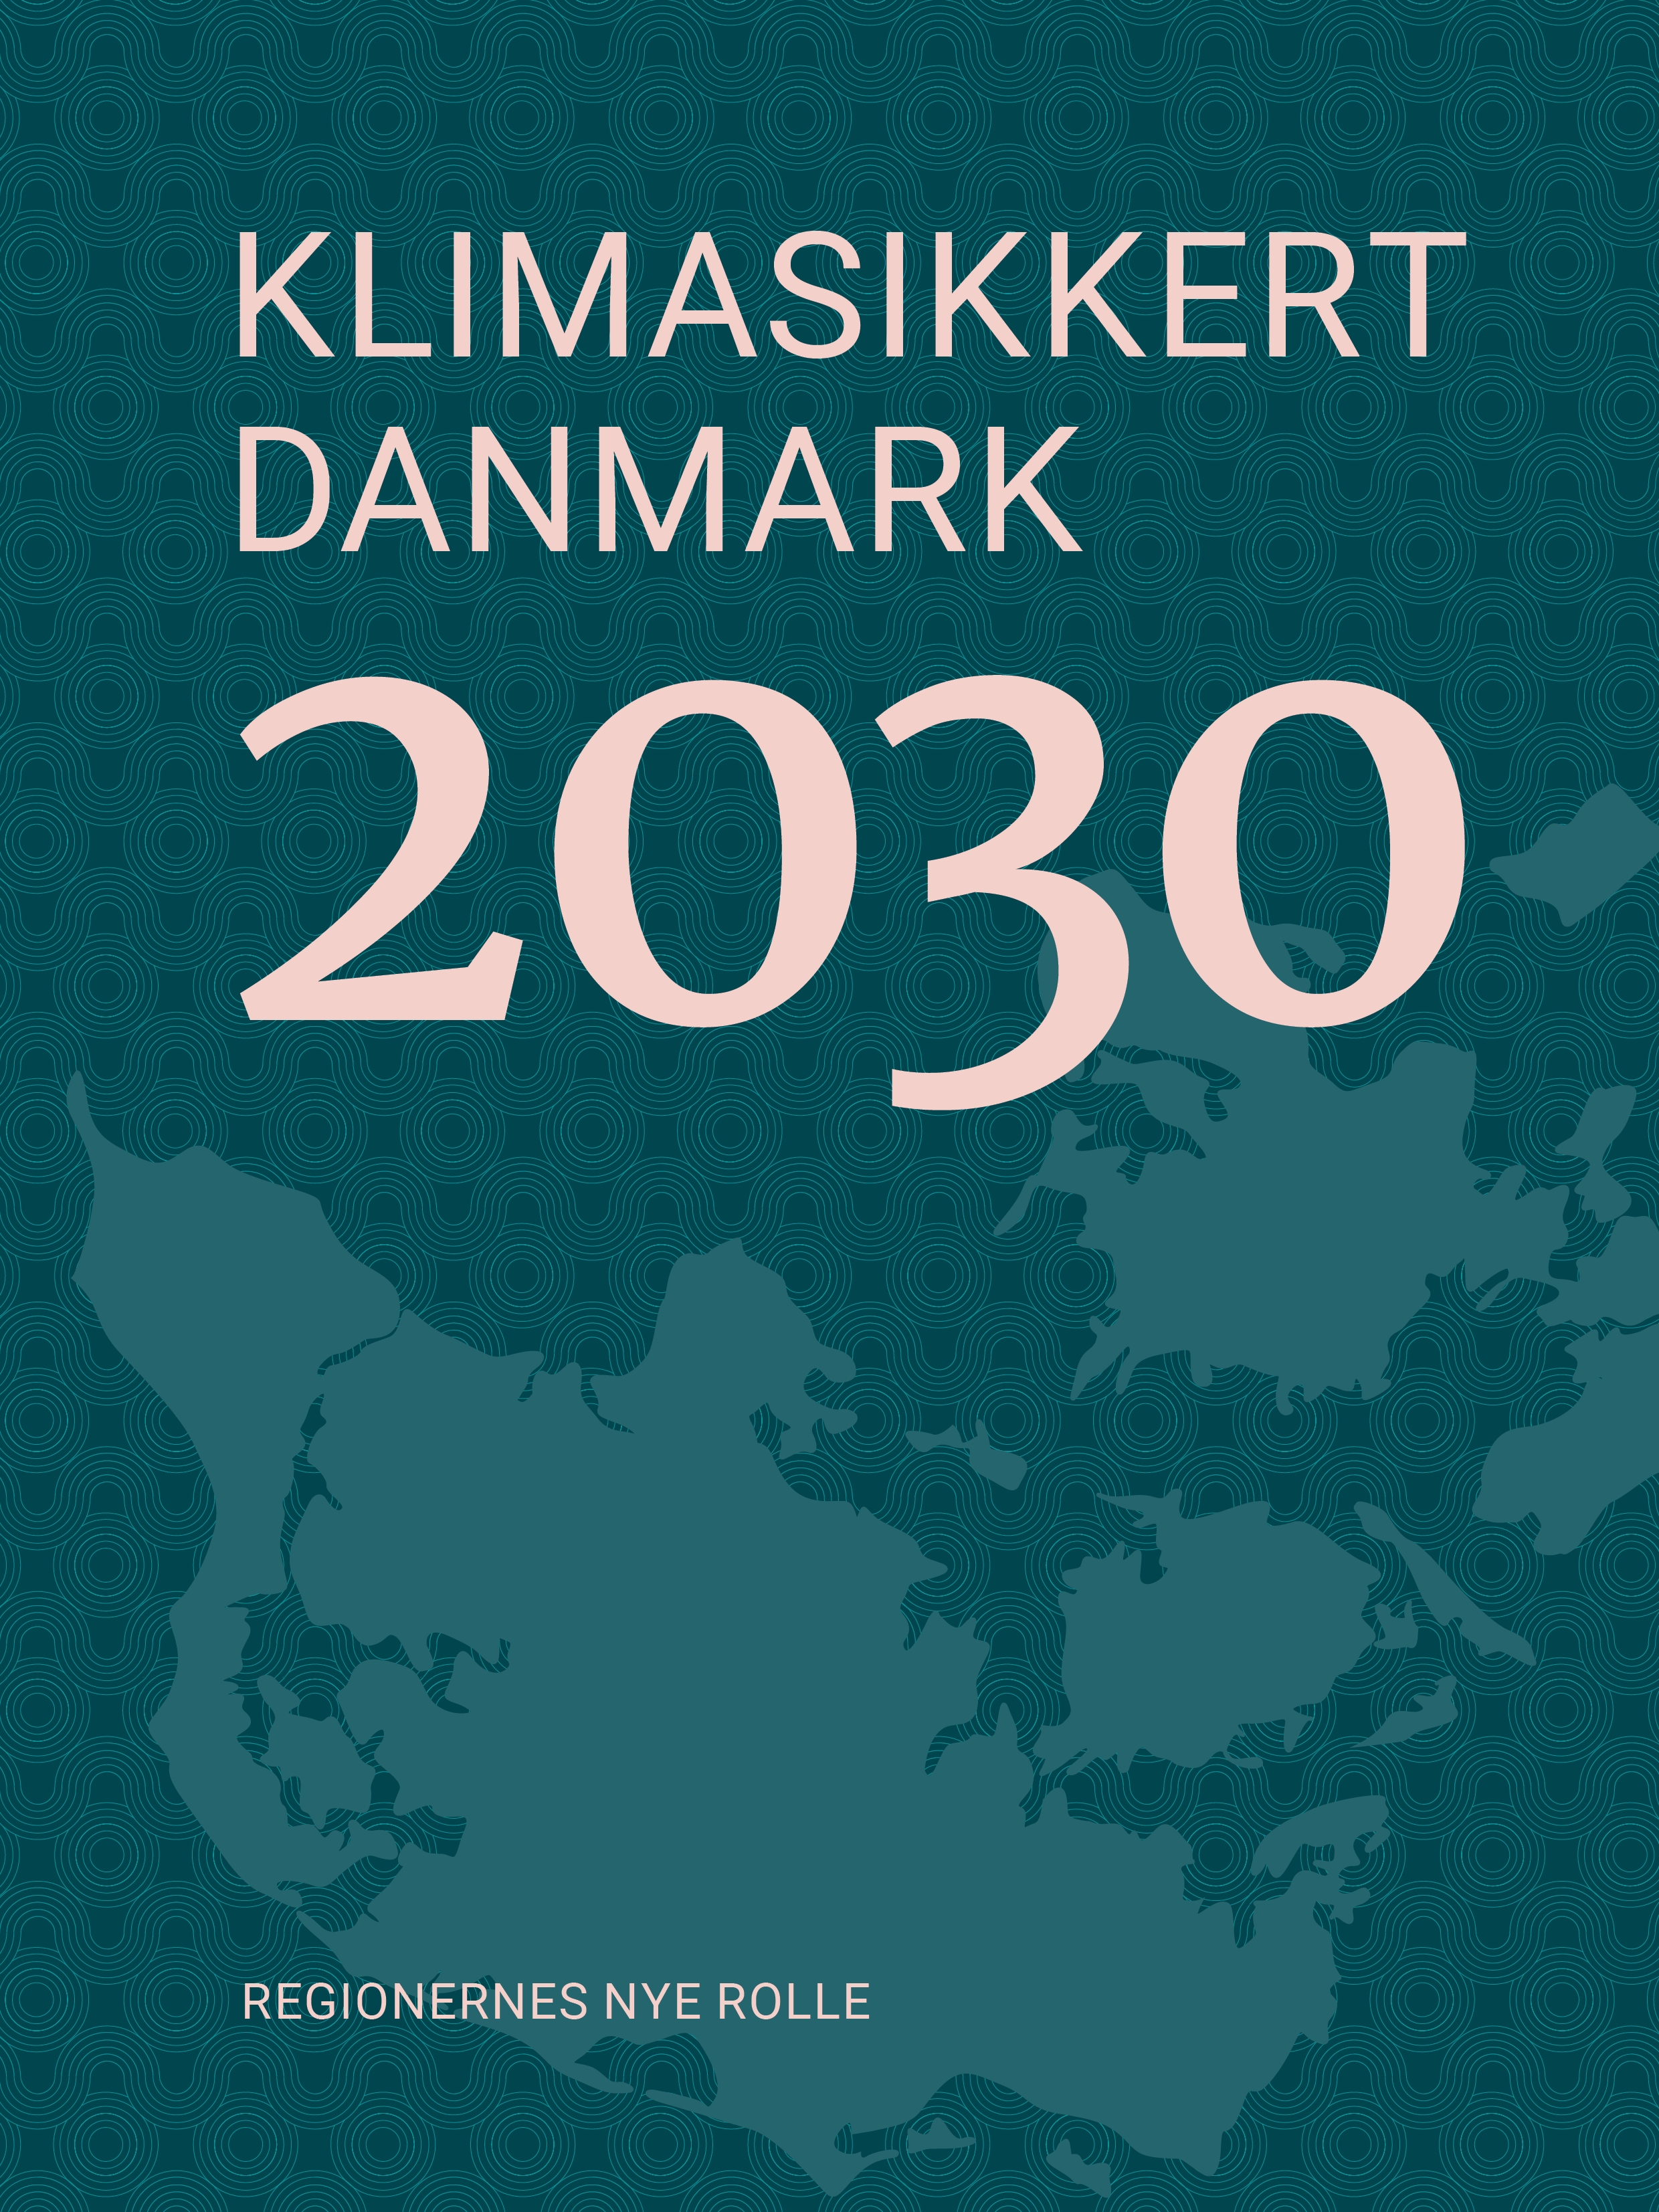 klimasikkert danmark 2030 climate safe denmark 2030 sustainia